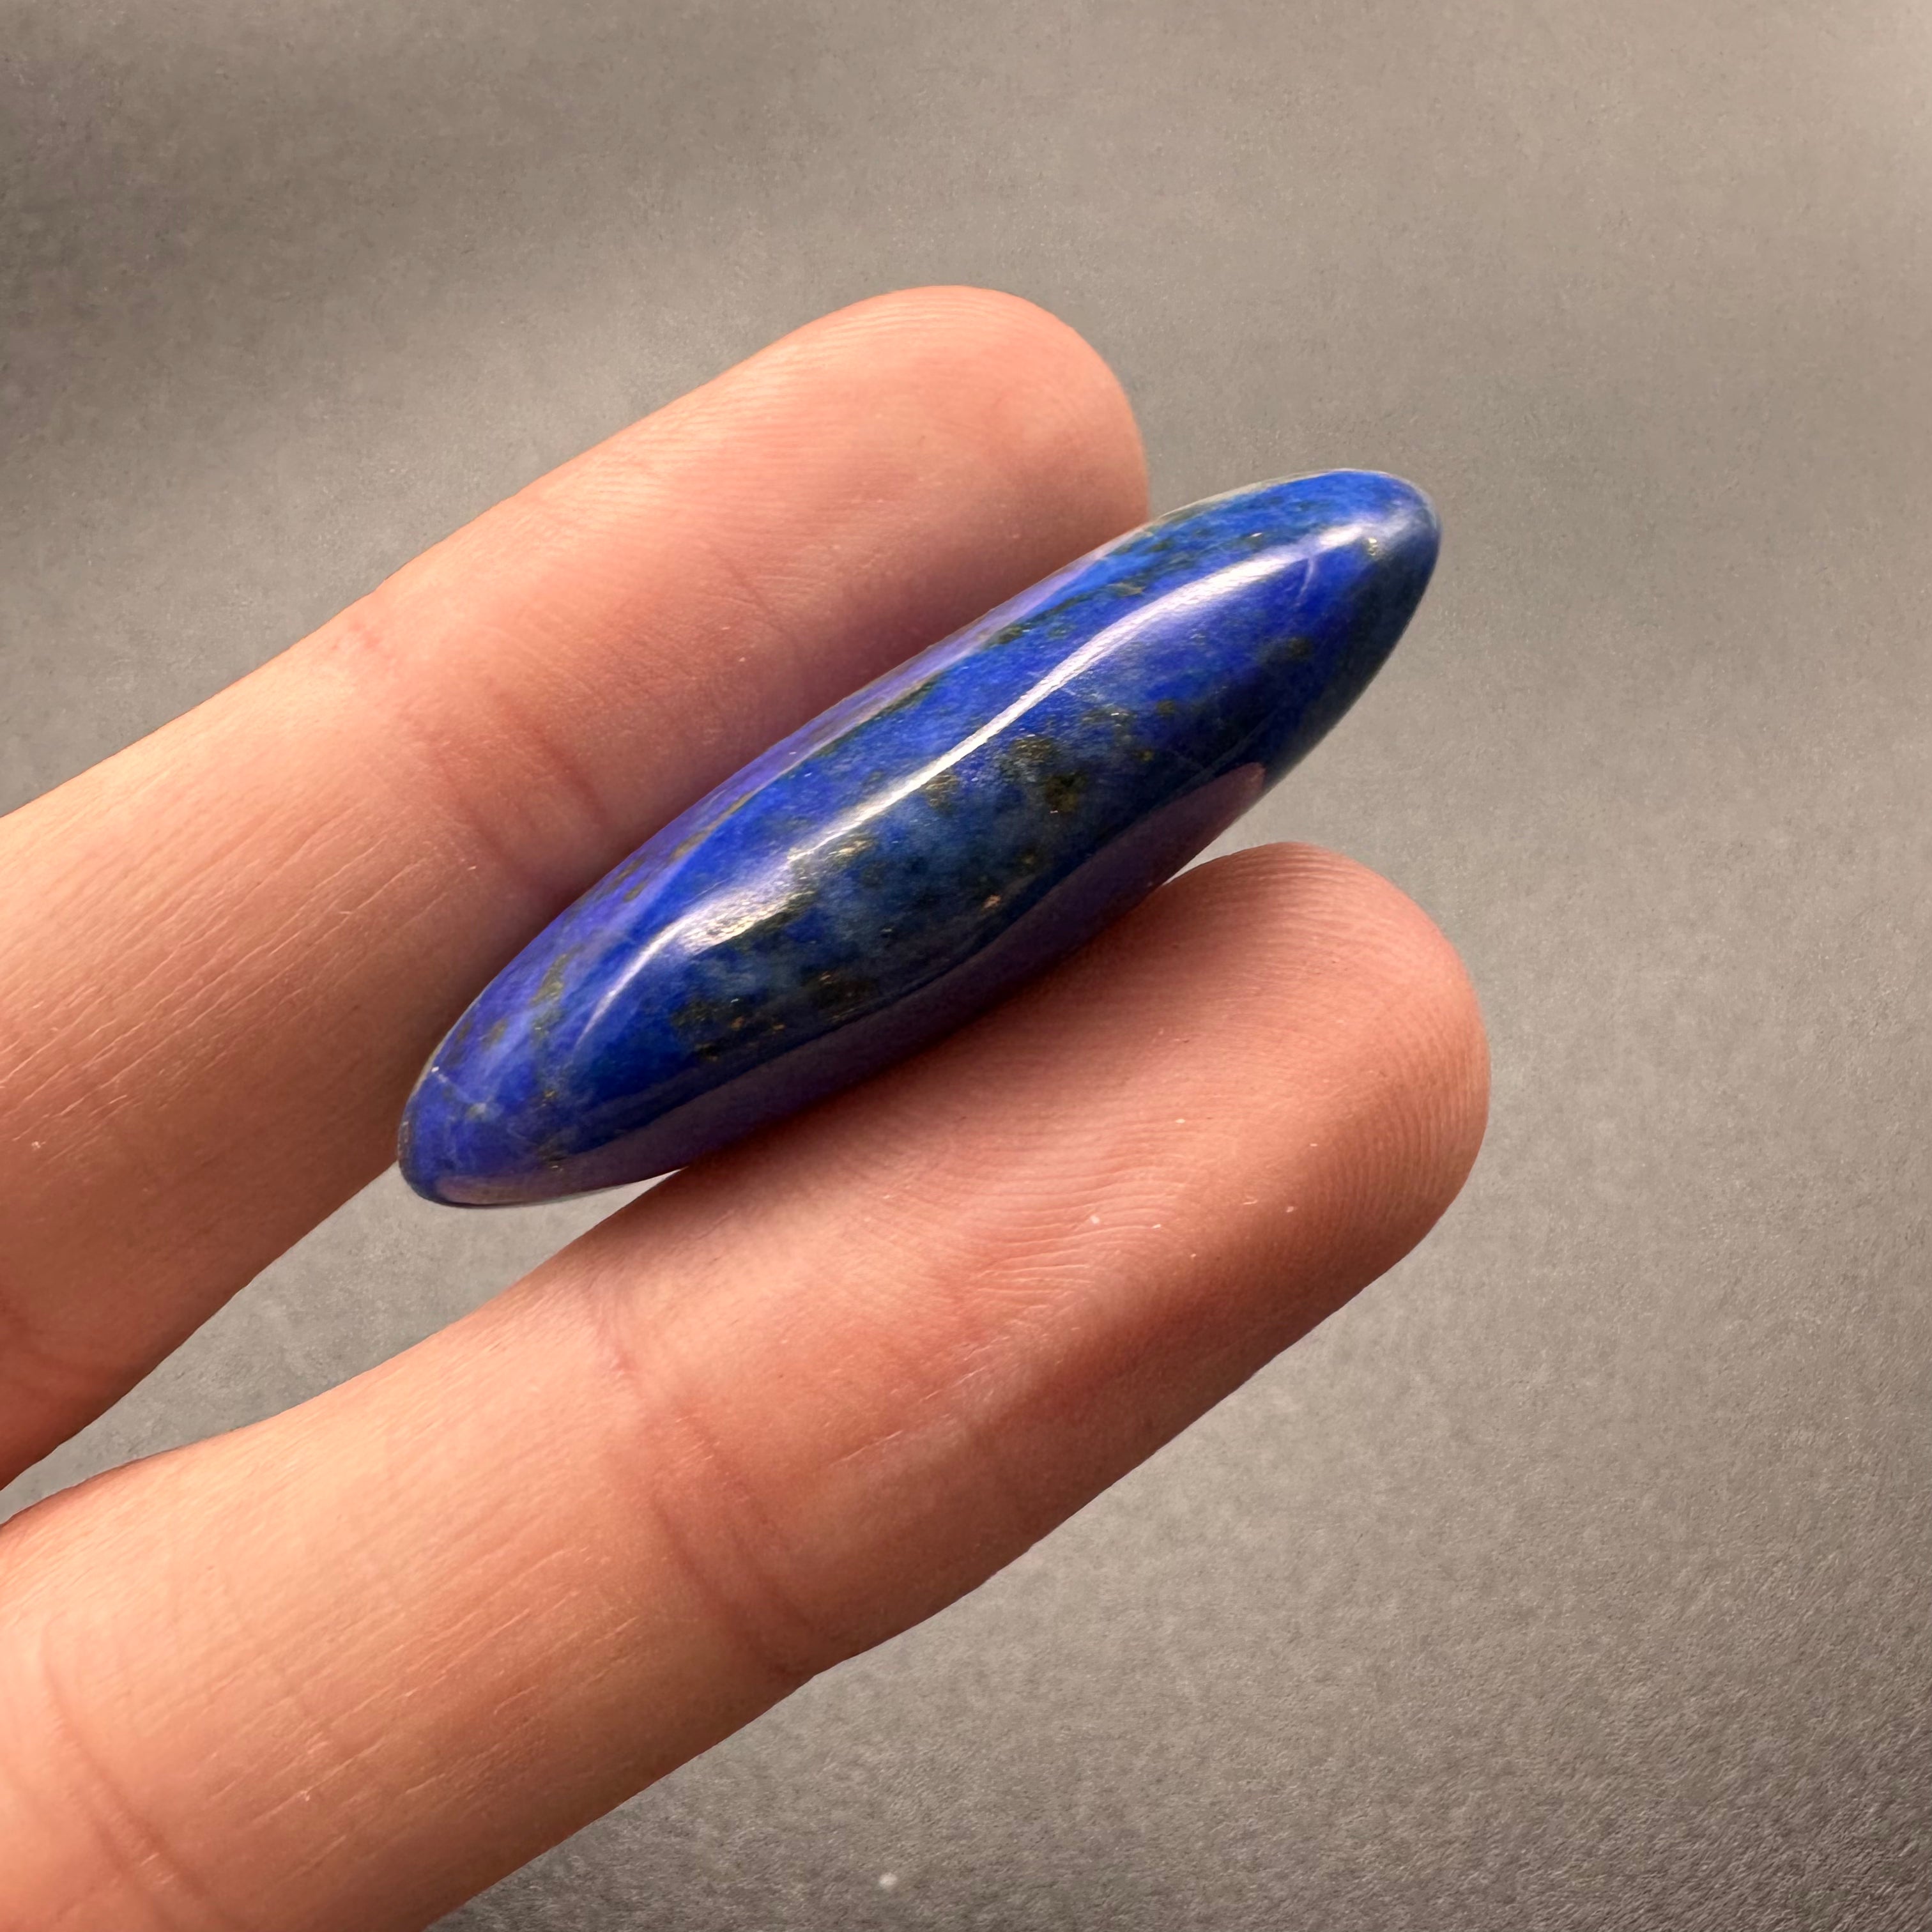 Lapis Lazuli Medicine Piece - 157